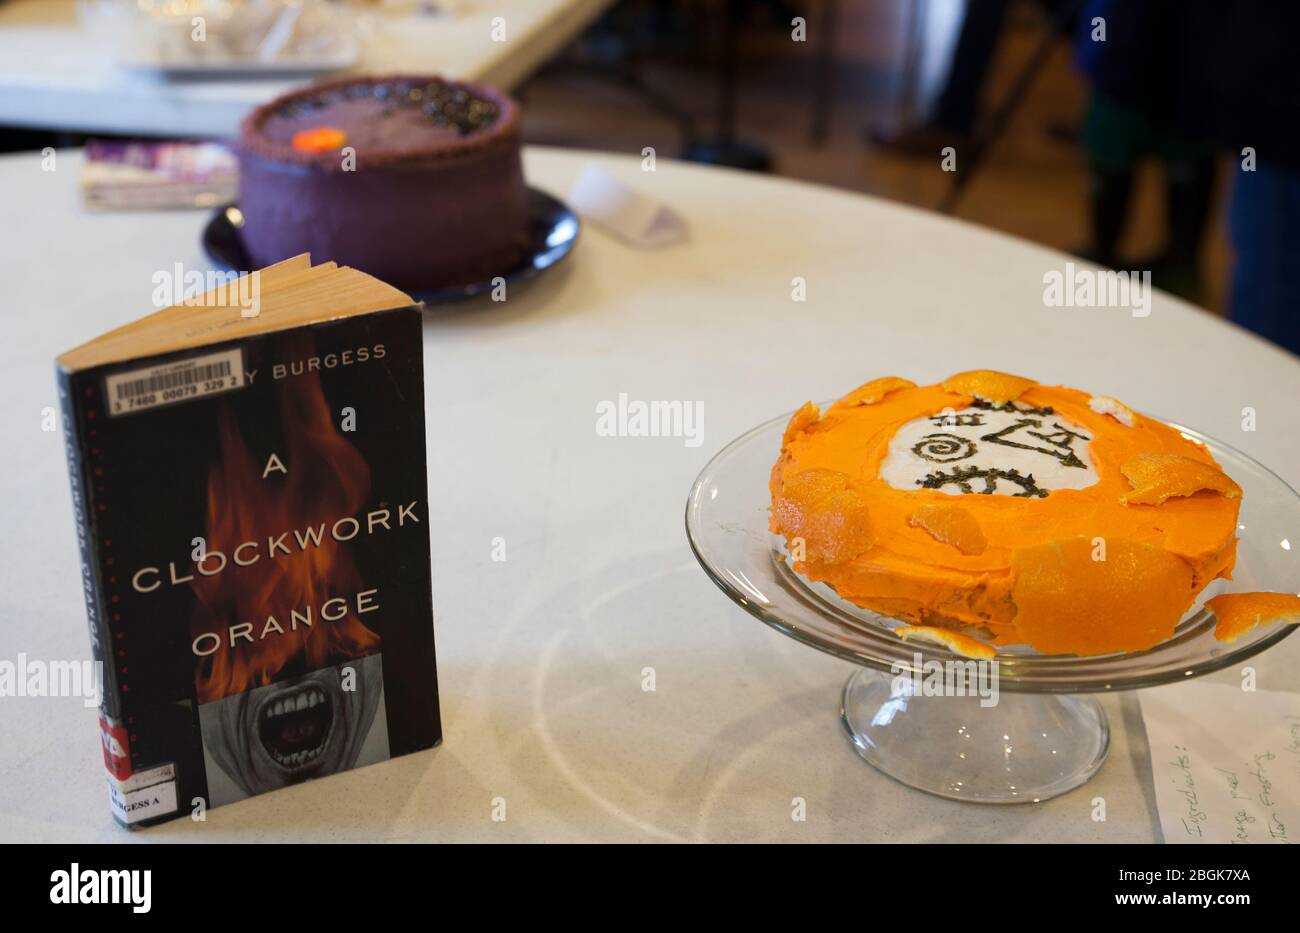 La soumission de concours de livres comestibles de bibliothèque est un gâteau décoré à l'orange pour le Clockwork Orange d'Anthony Burgess. Banque D'Images